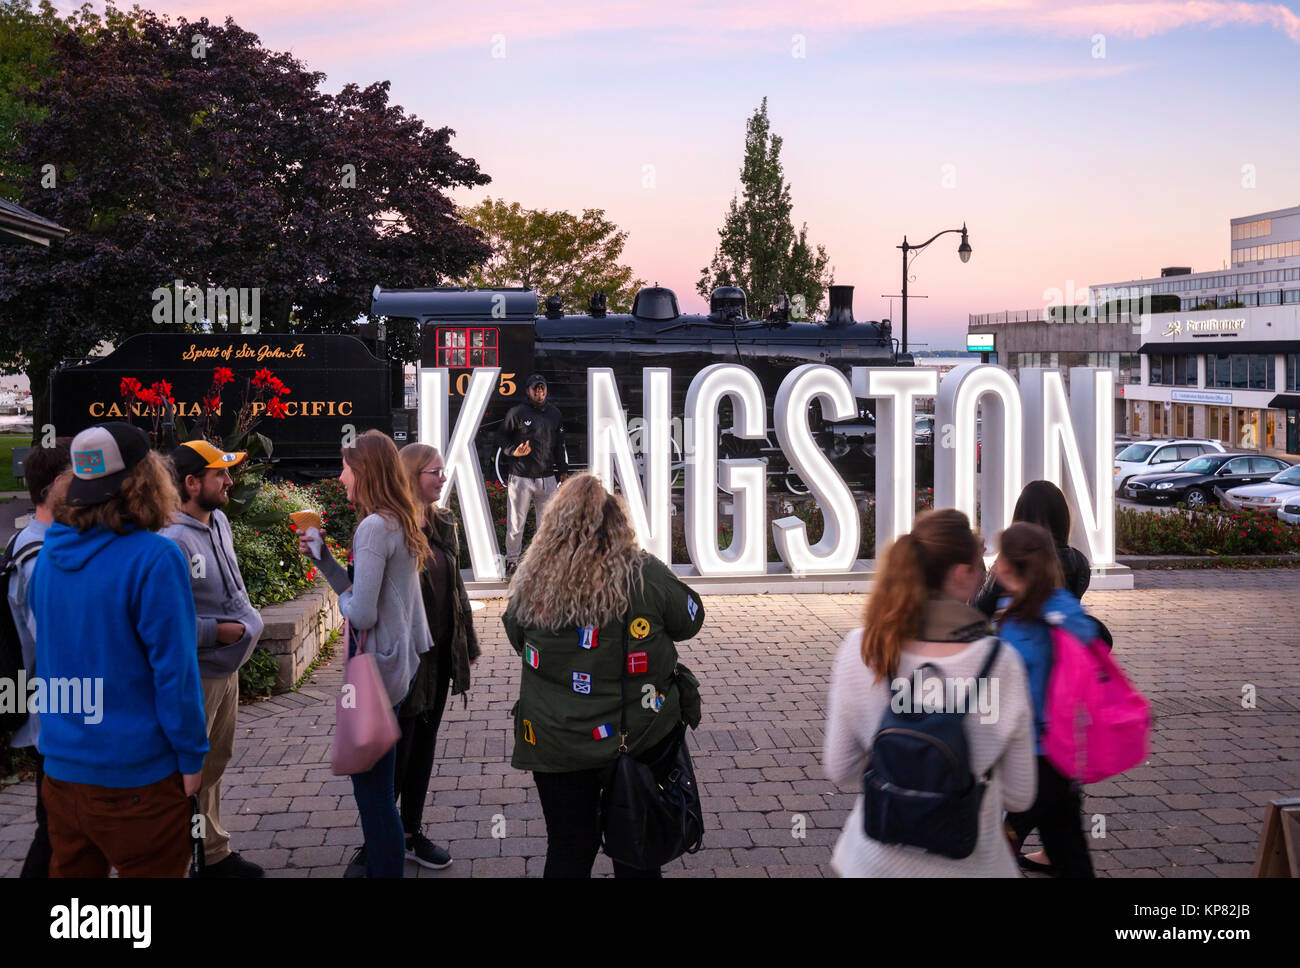 Una señal luminosa al atardecer por Kingston denominó la 'I' en Kingston es una atracción turística con jóvenes (turistas) que reúne a tomar fotos. Foto de stock